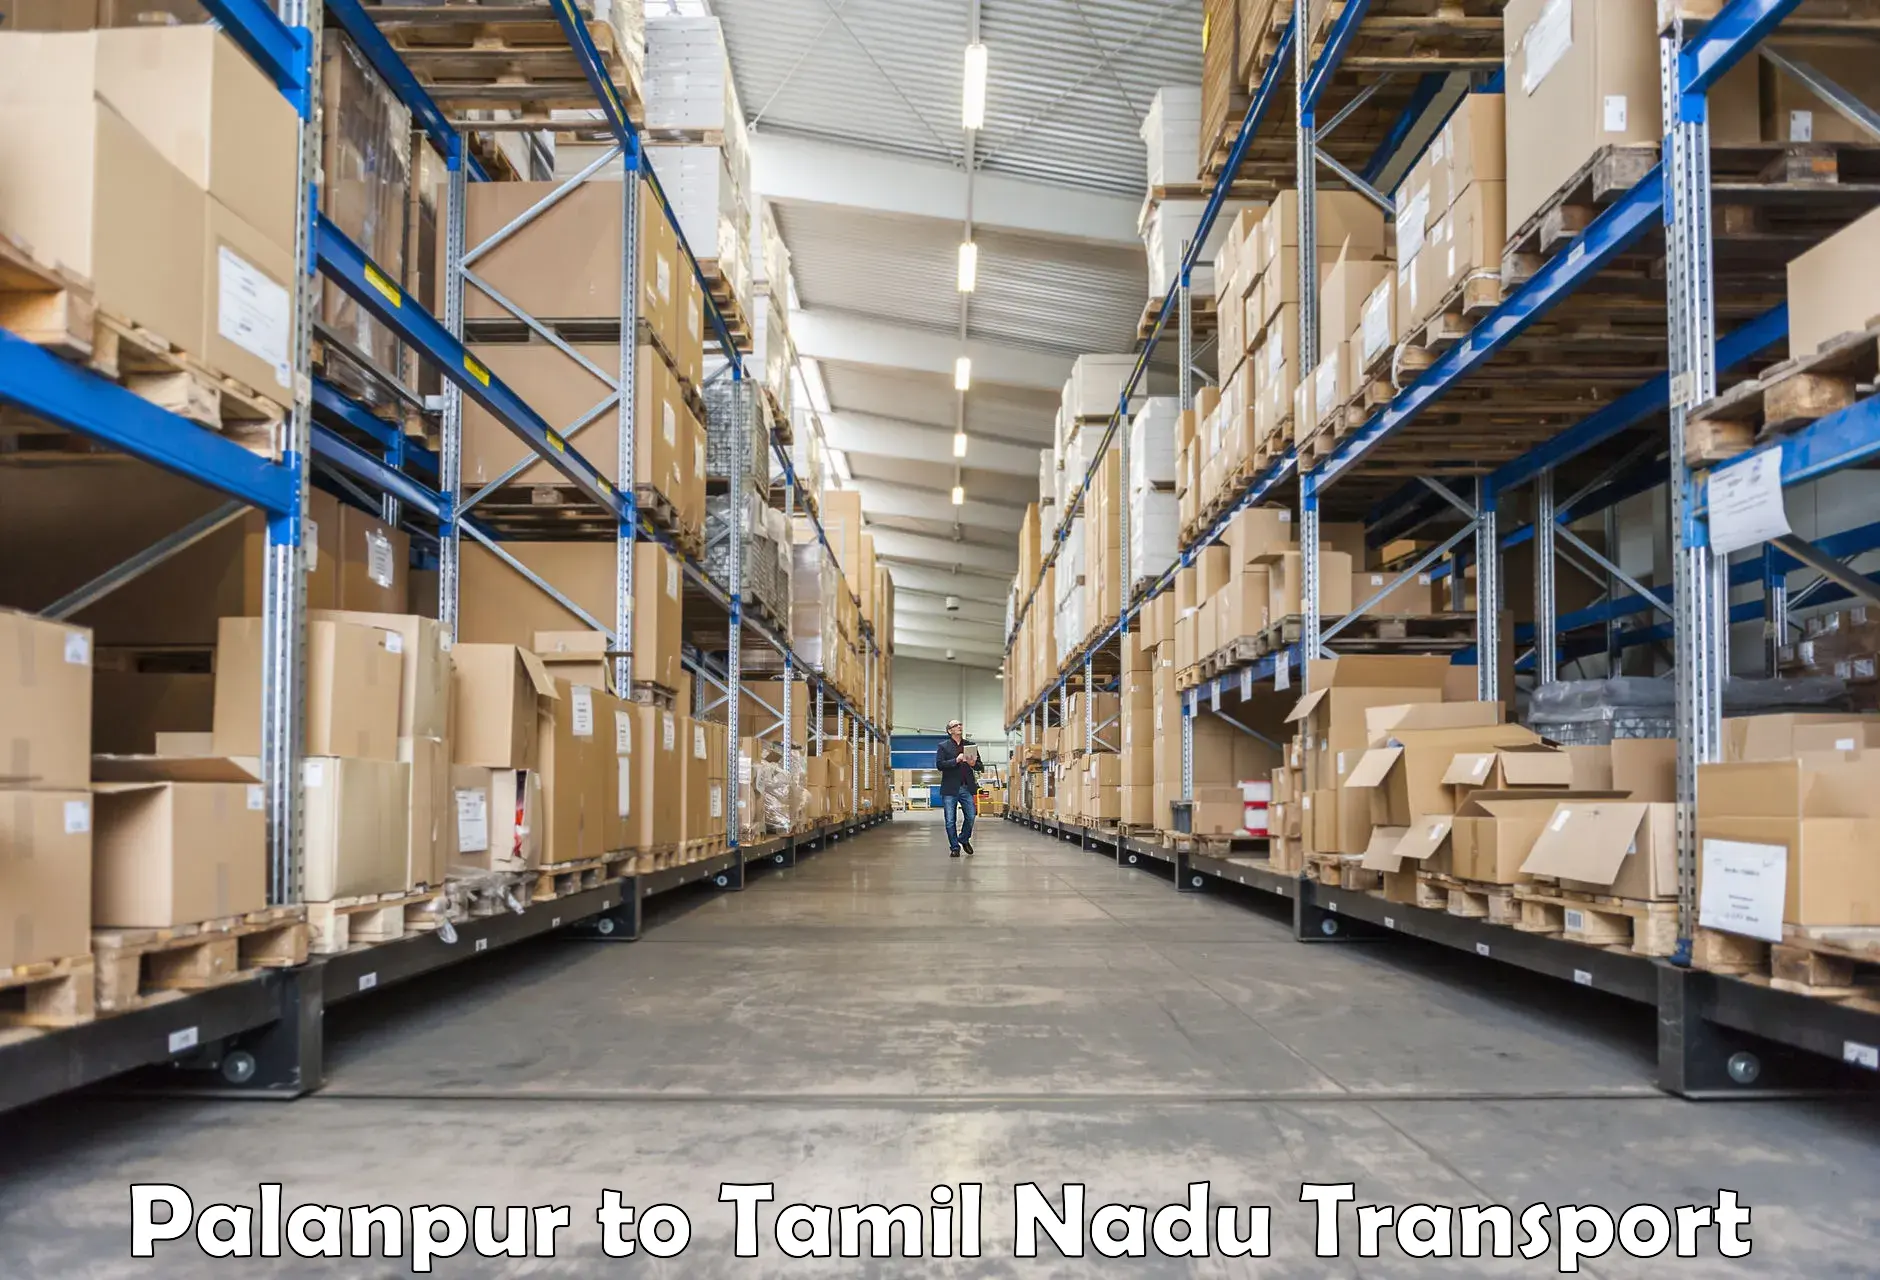 Nearest transport service Palanpur to Tallakulam